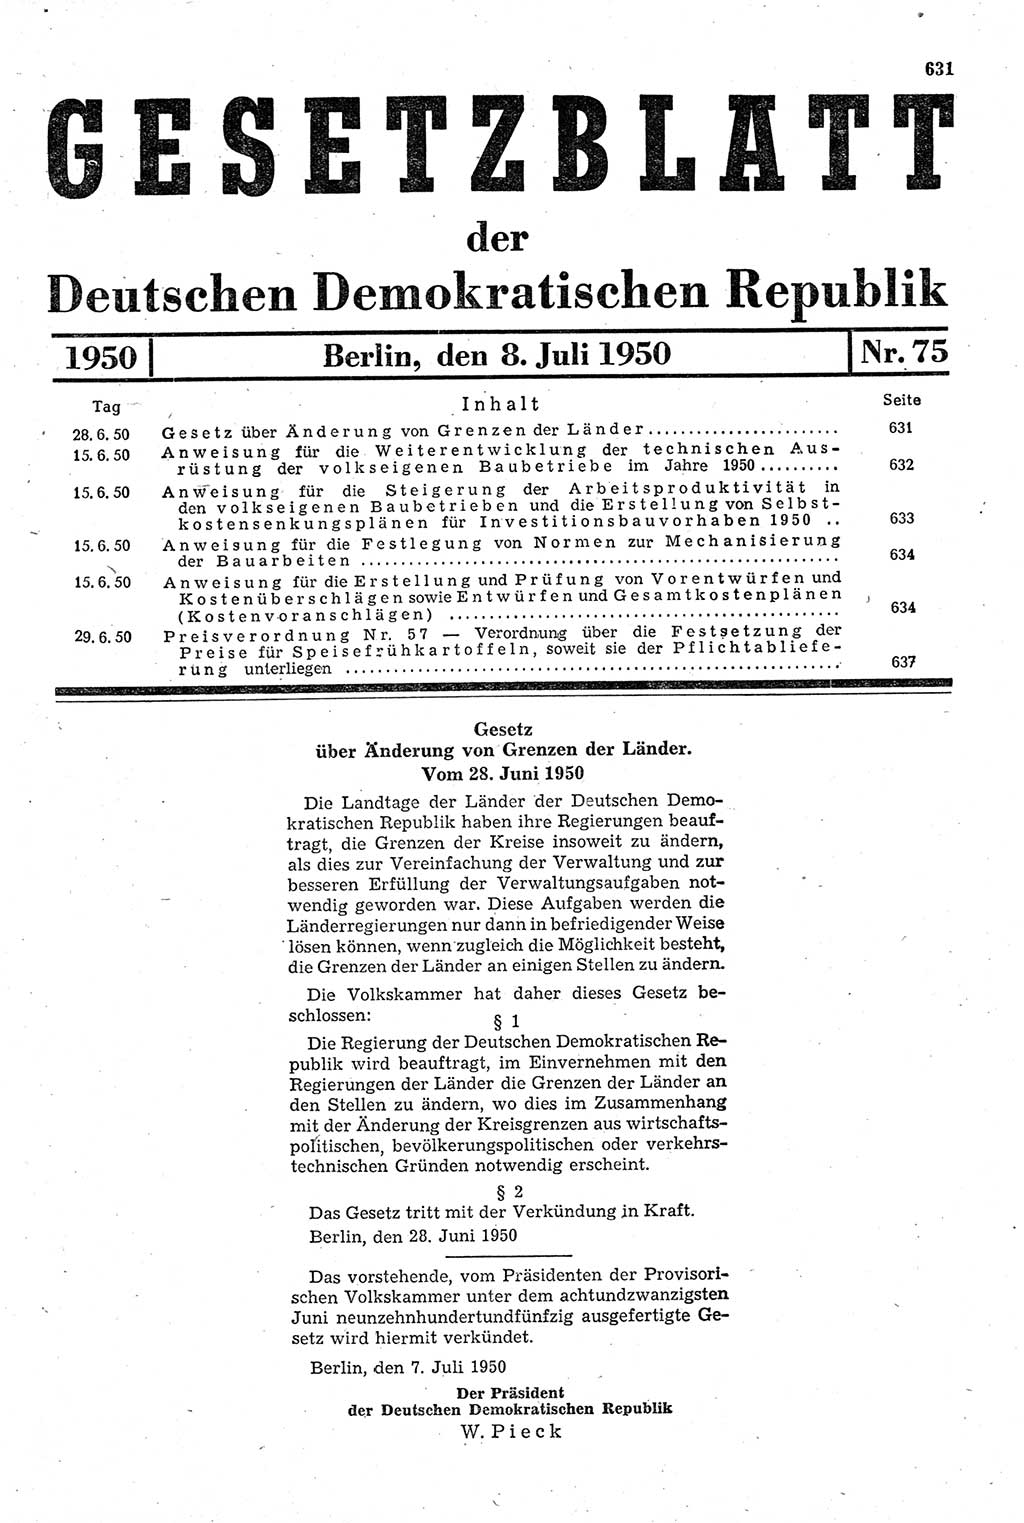 Gesetzblatt (GBl.) der Deutschen Demokratischen Republik (DDR) 1950, Seite 631 (GBl. DDR 1950, S. 631)